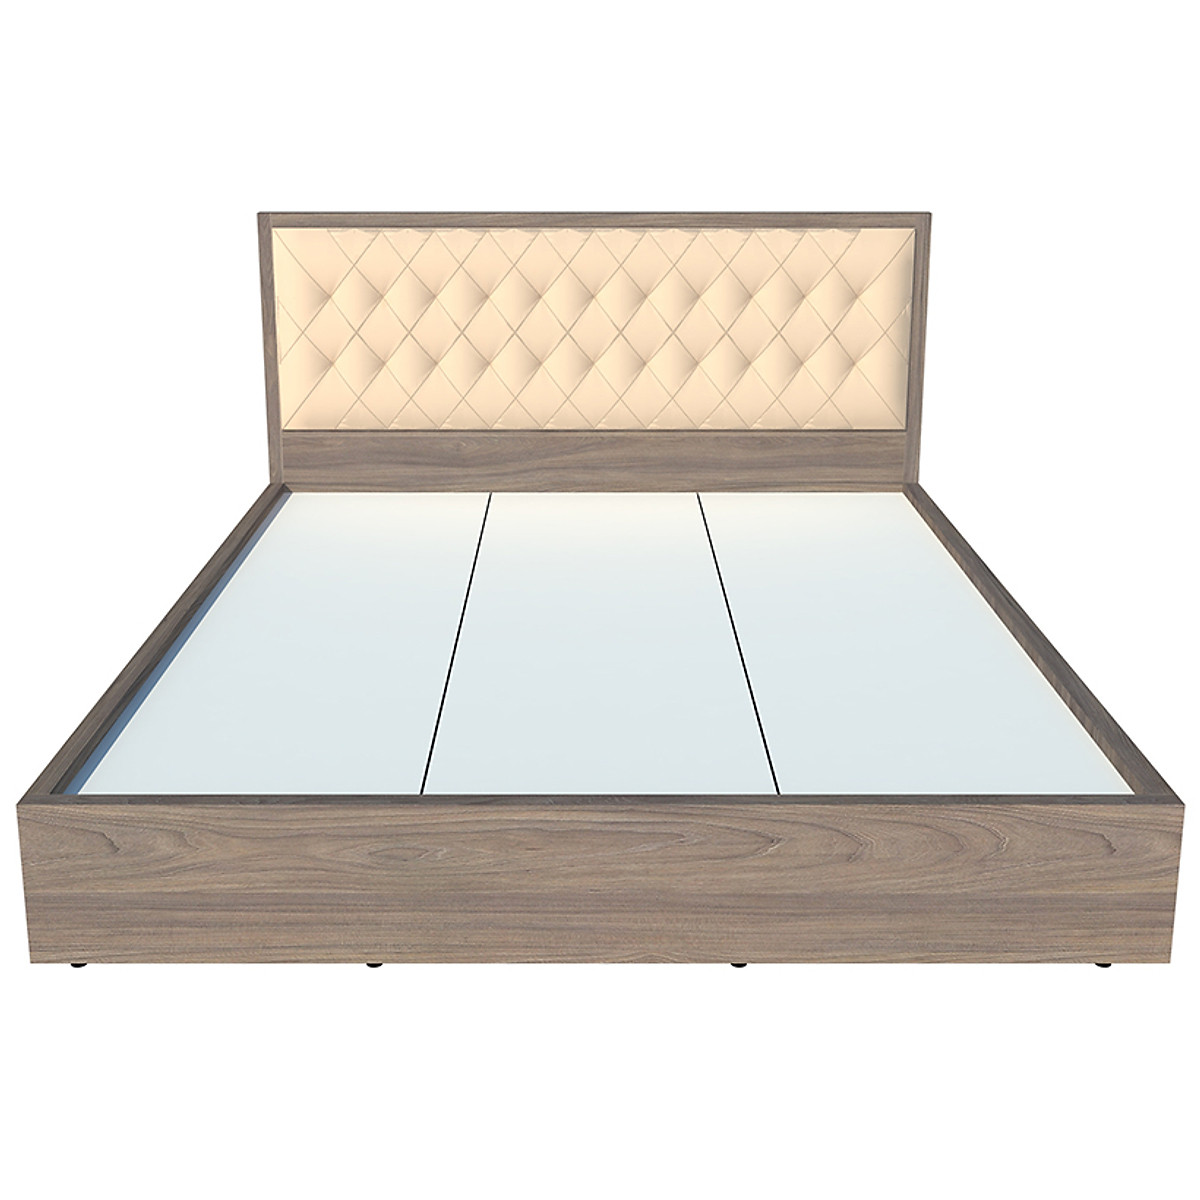 Giường ngủ cao cấp Tundo màu xám 180cm x 200cm